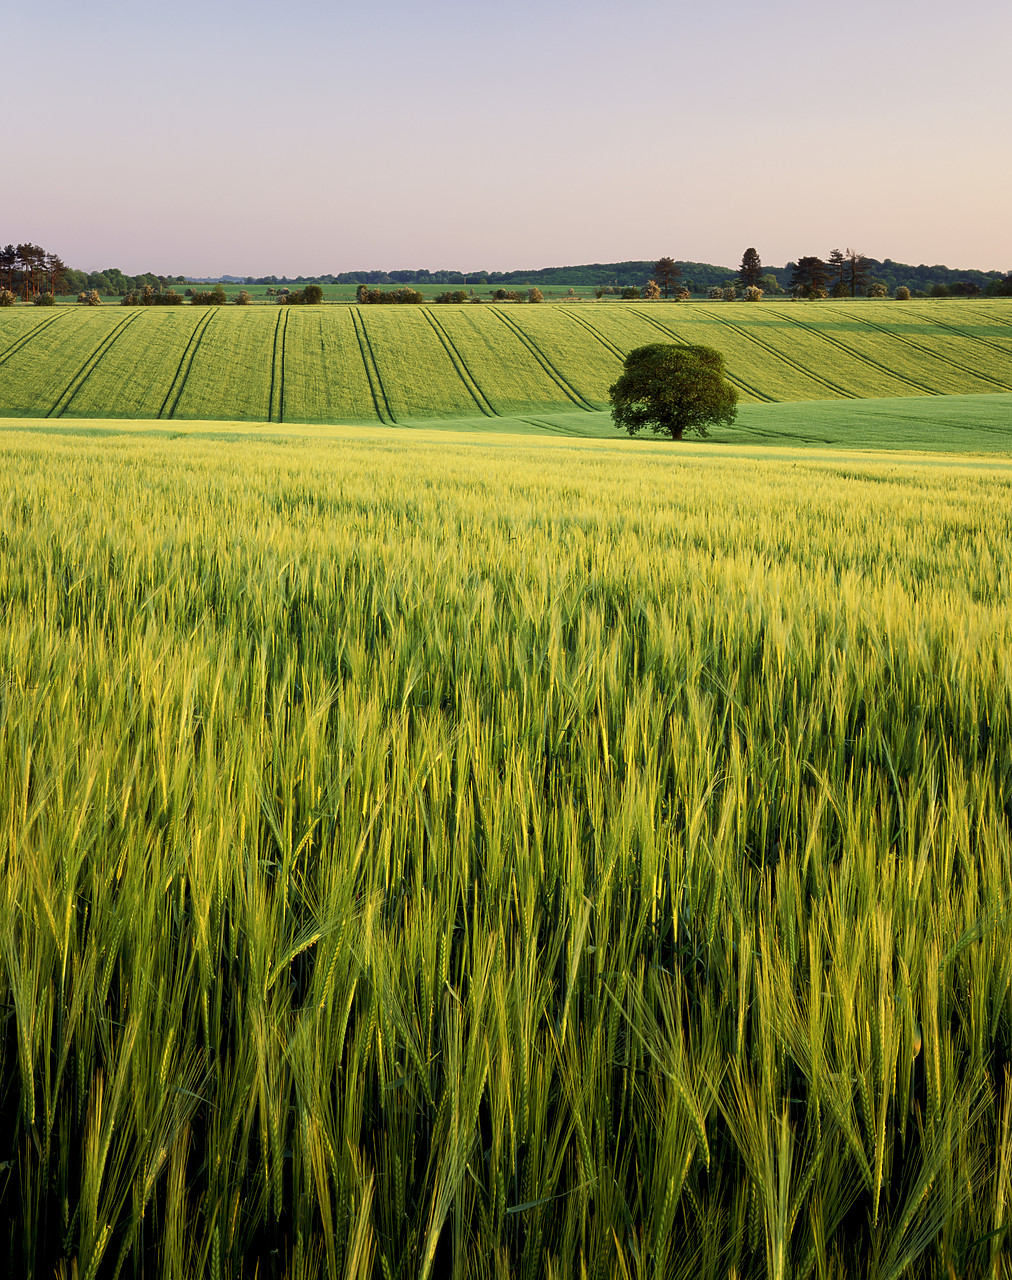 #980676-6 - Field of Barley & Tree, Keysley Down, Wiltshire,
England